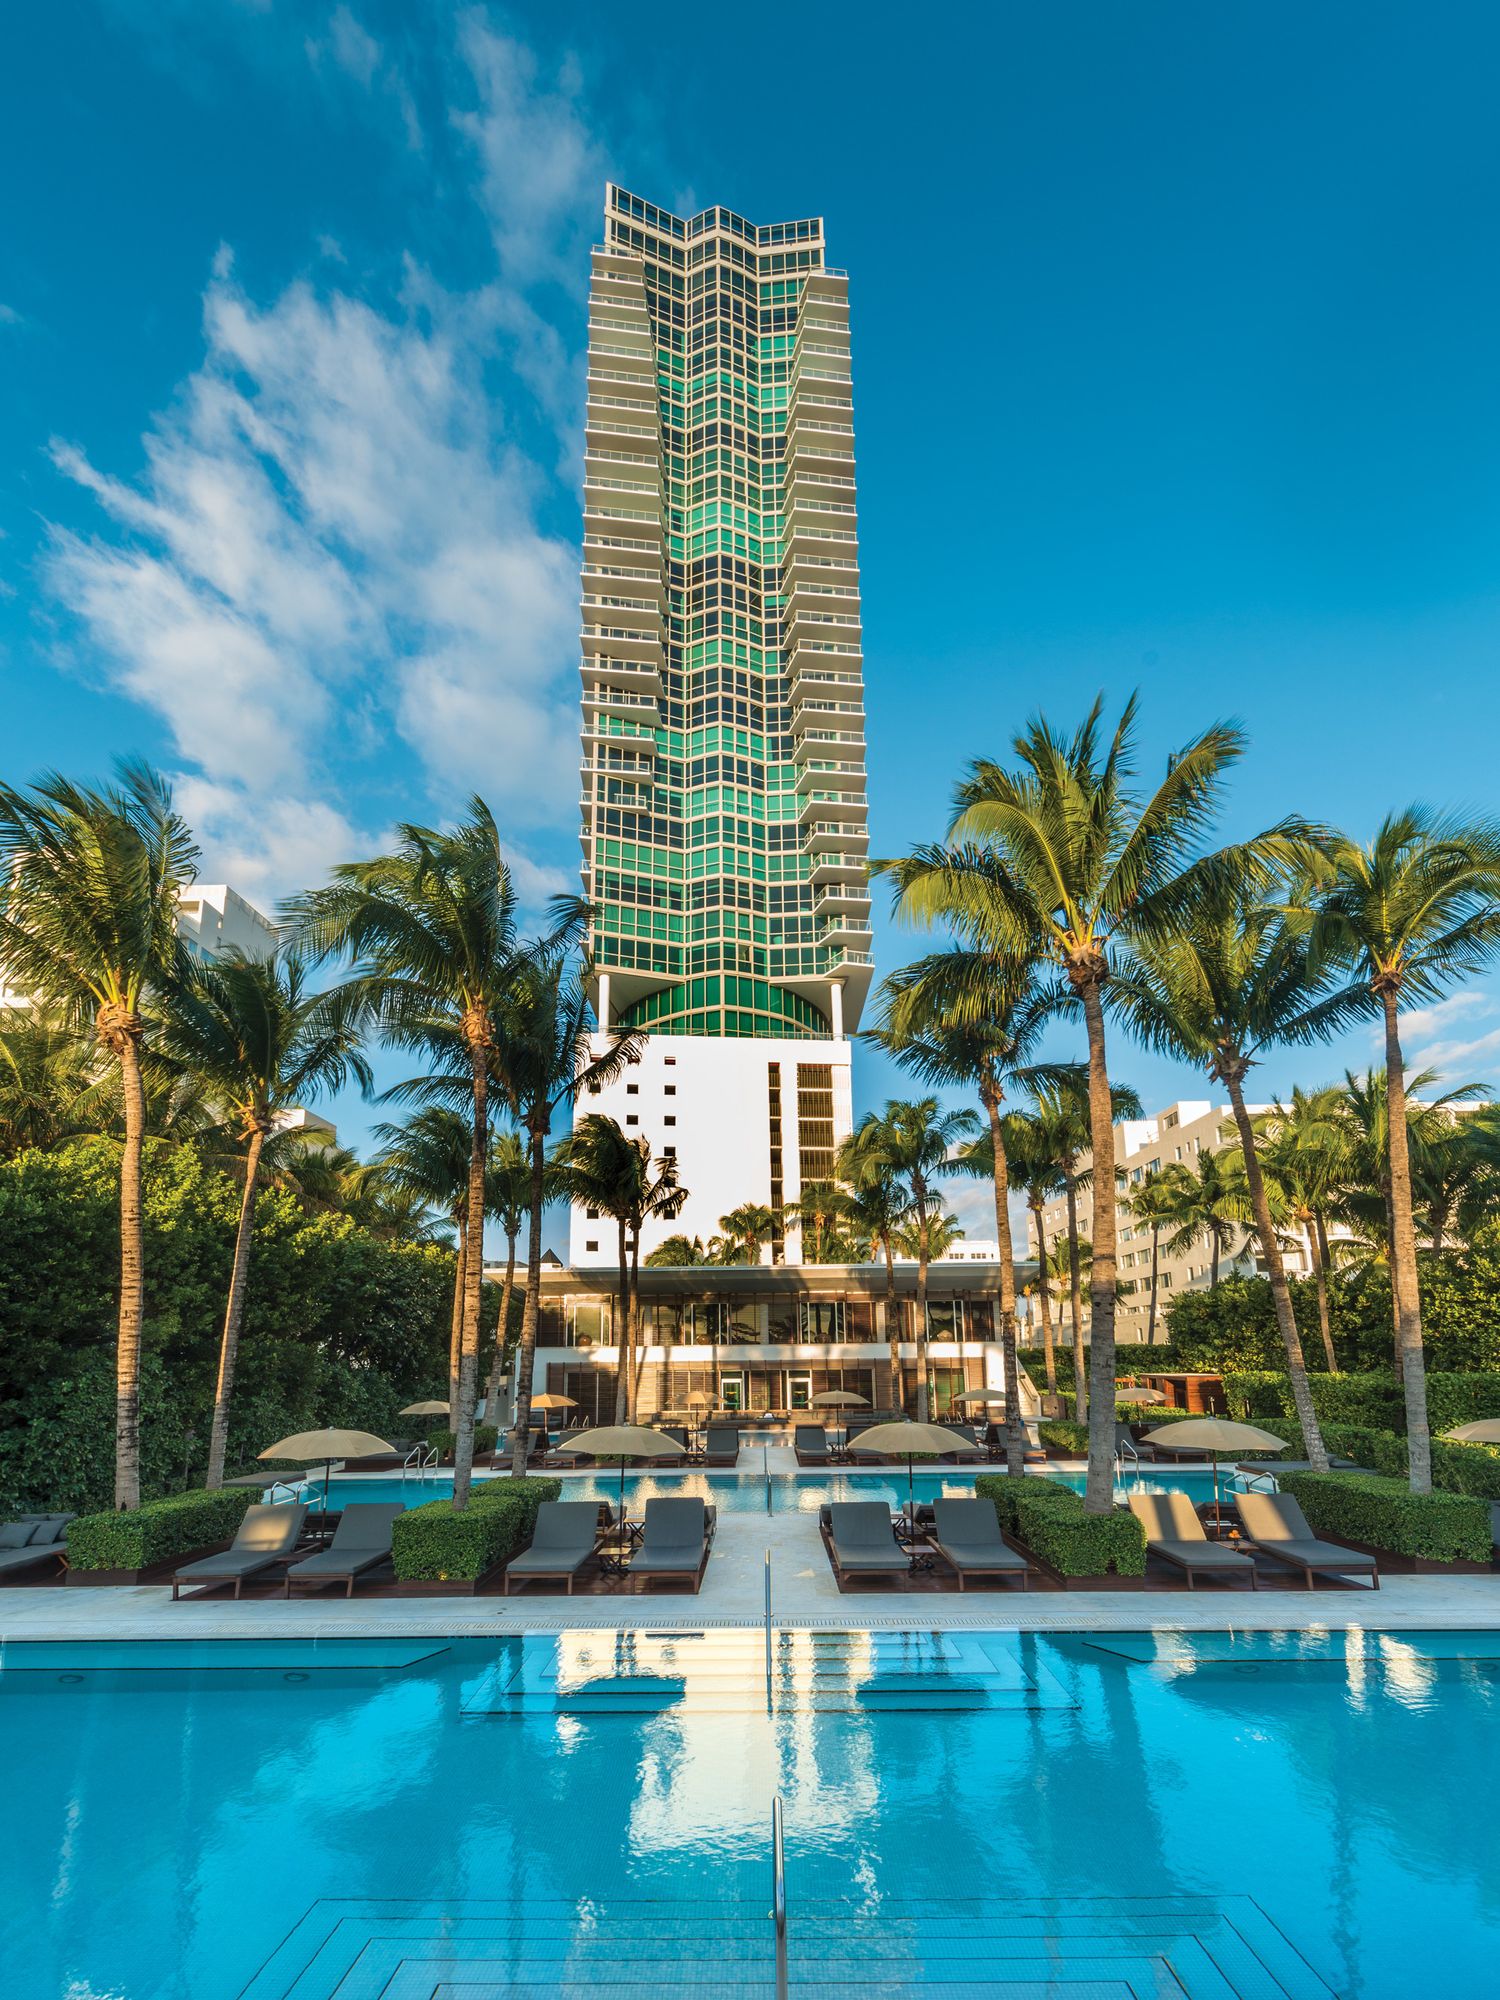 Exterior image of the Setai Miami Beach hotel.